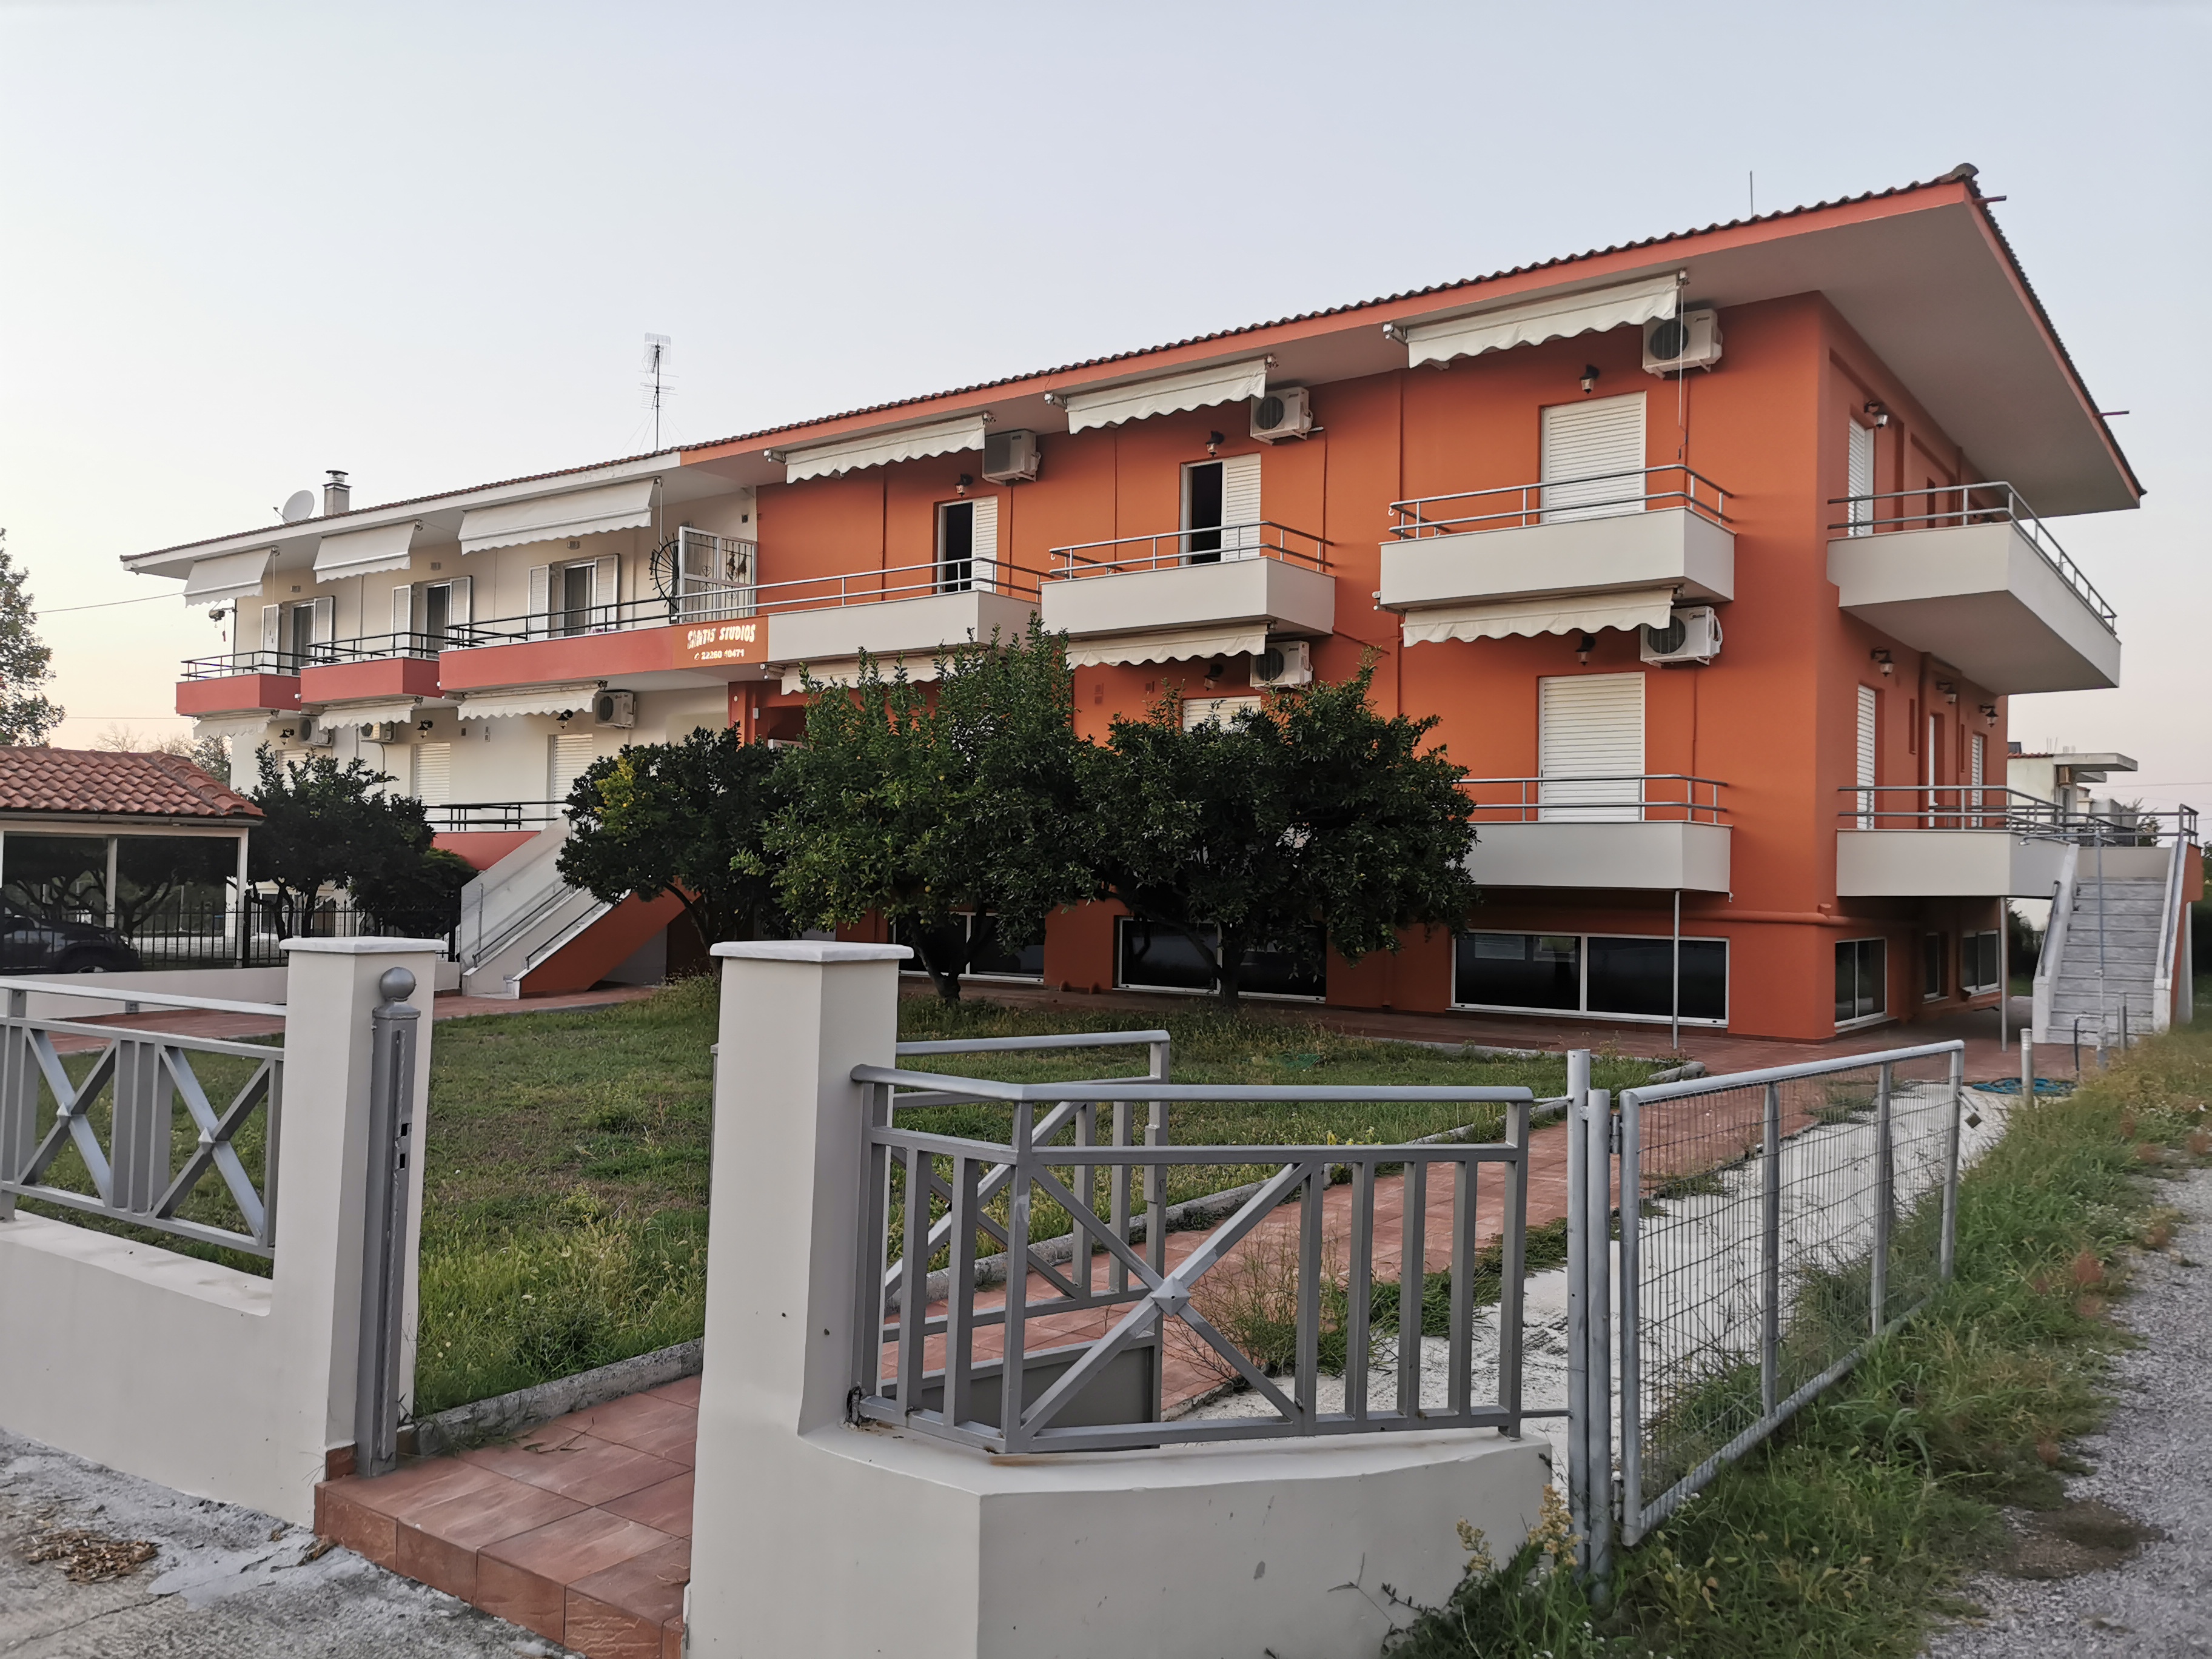 Grcka apartmani letovanje, Evia, Pefki, vila Santis 2, eksterijer